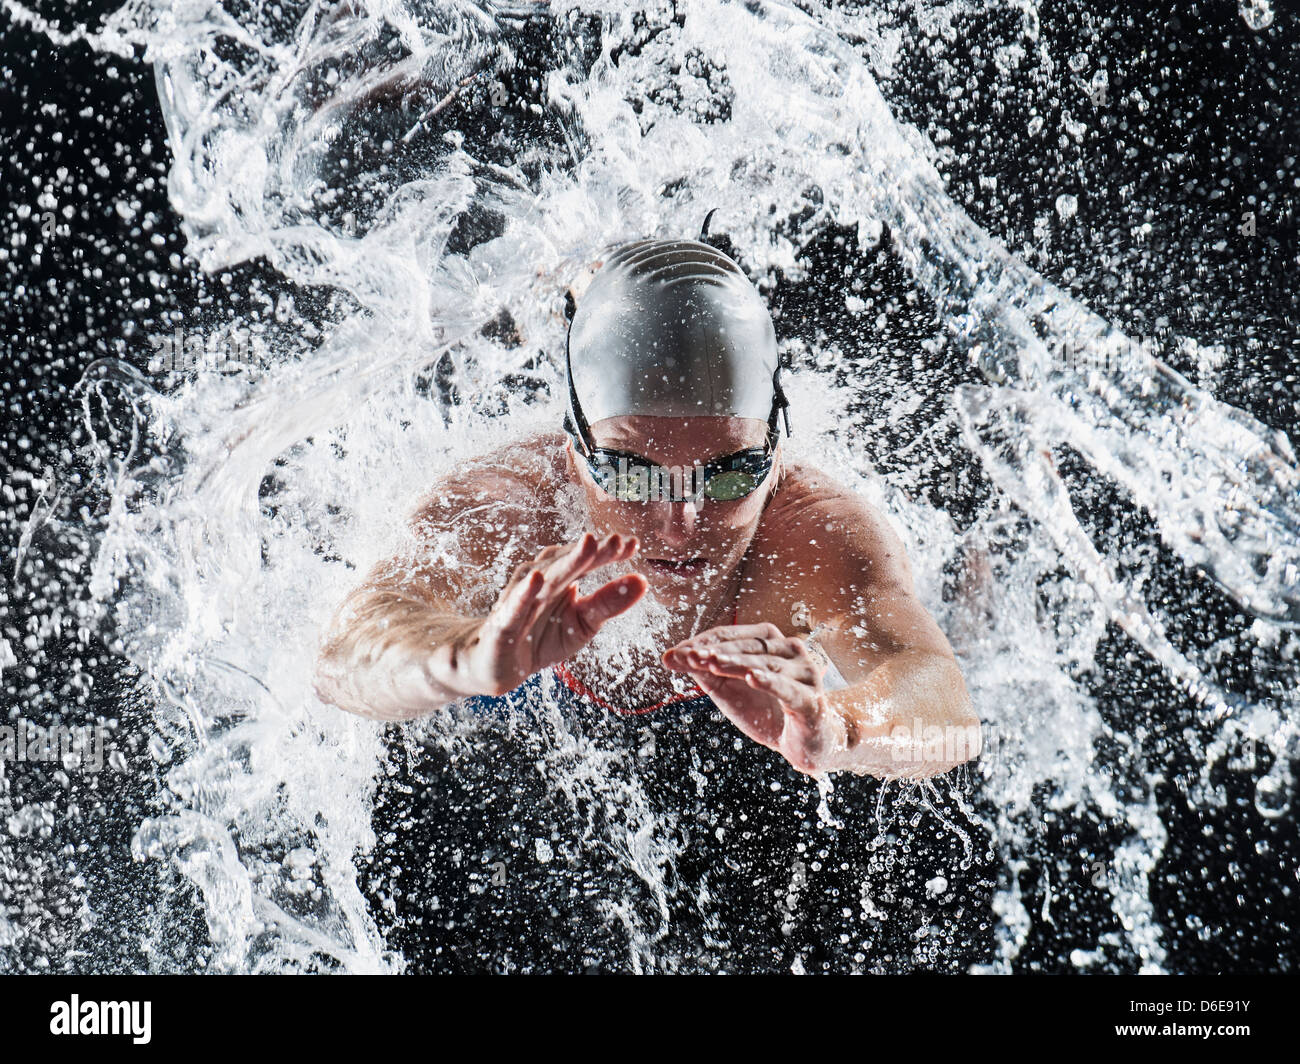 Caucasian swimmer splashing in water Stock Photo